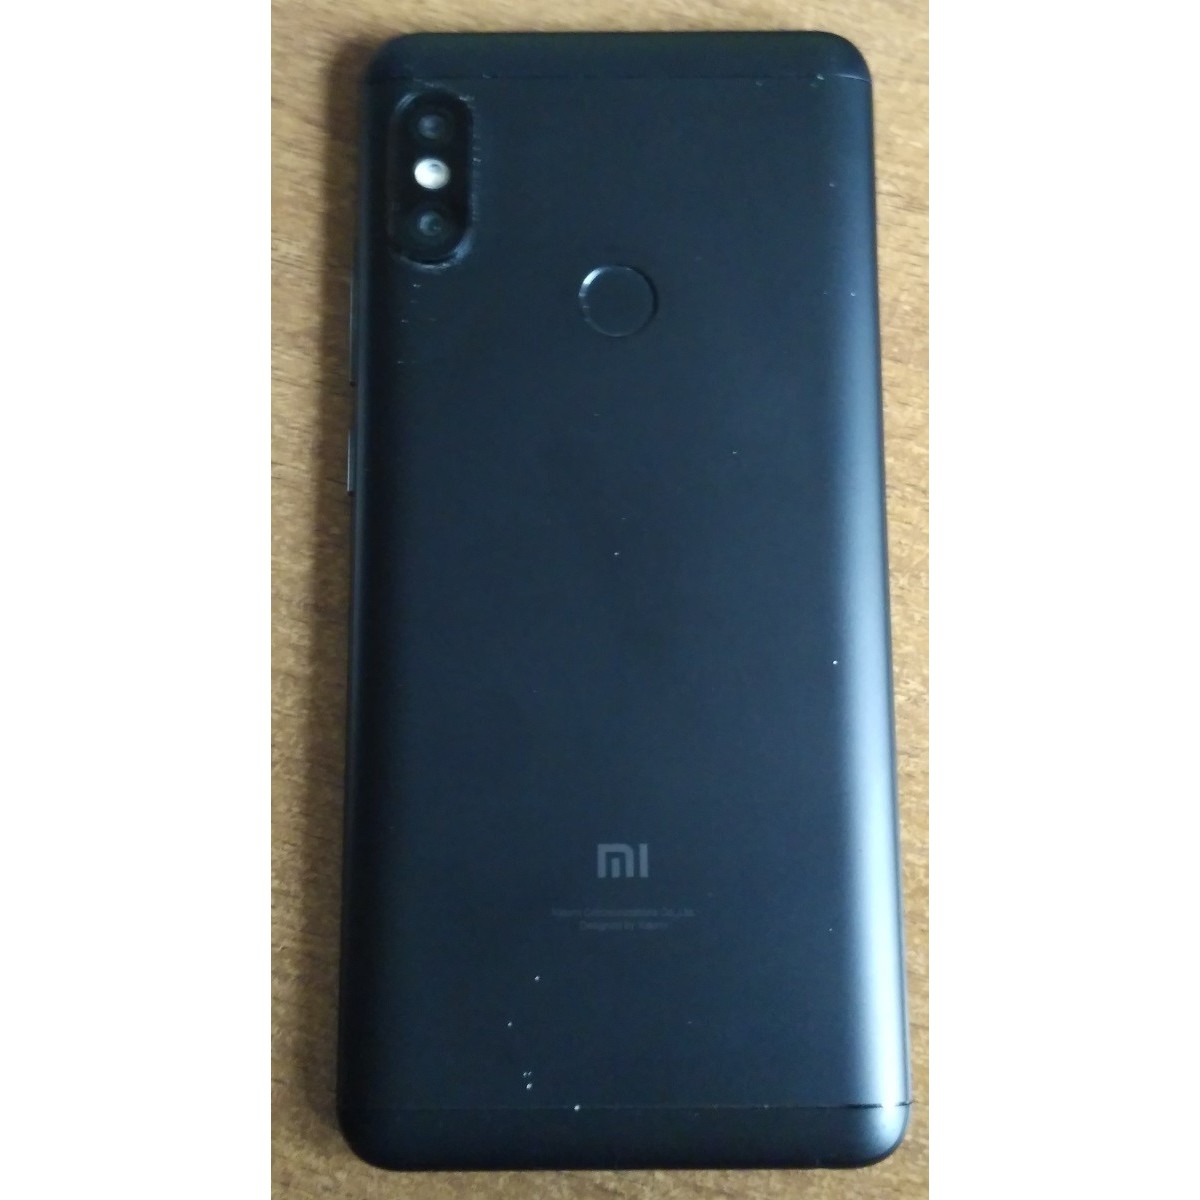 Мобильный телефон Xiaomi Redmi Note 5 64GB/4GB (золотистый)